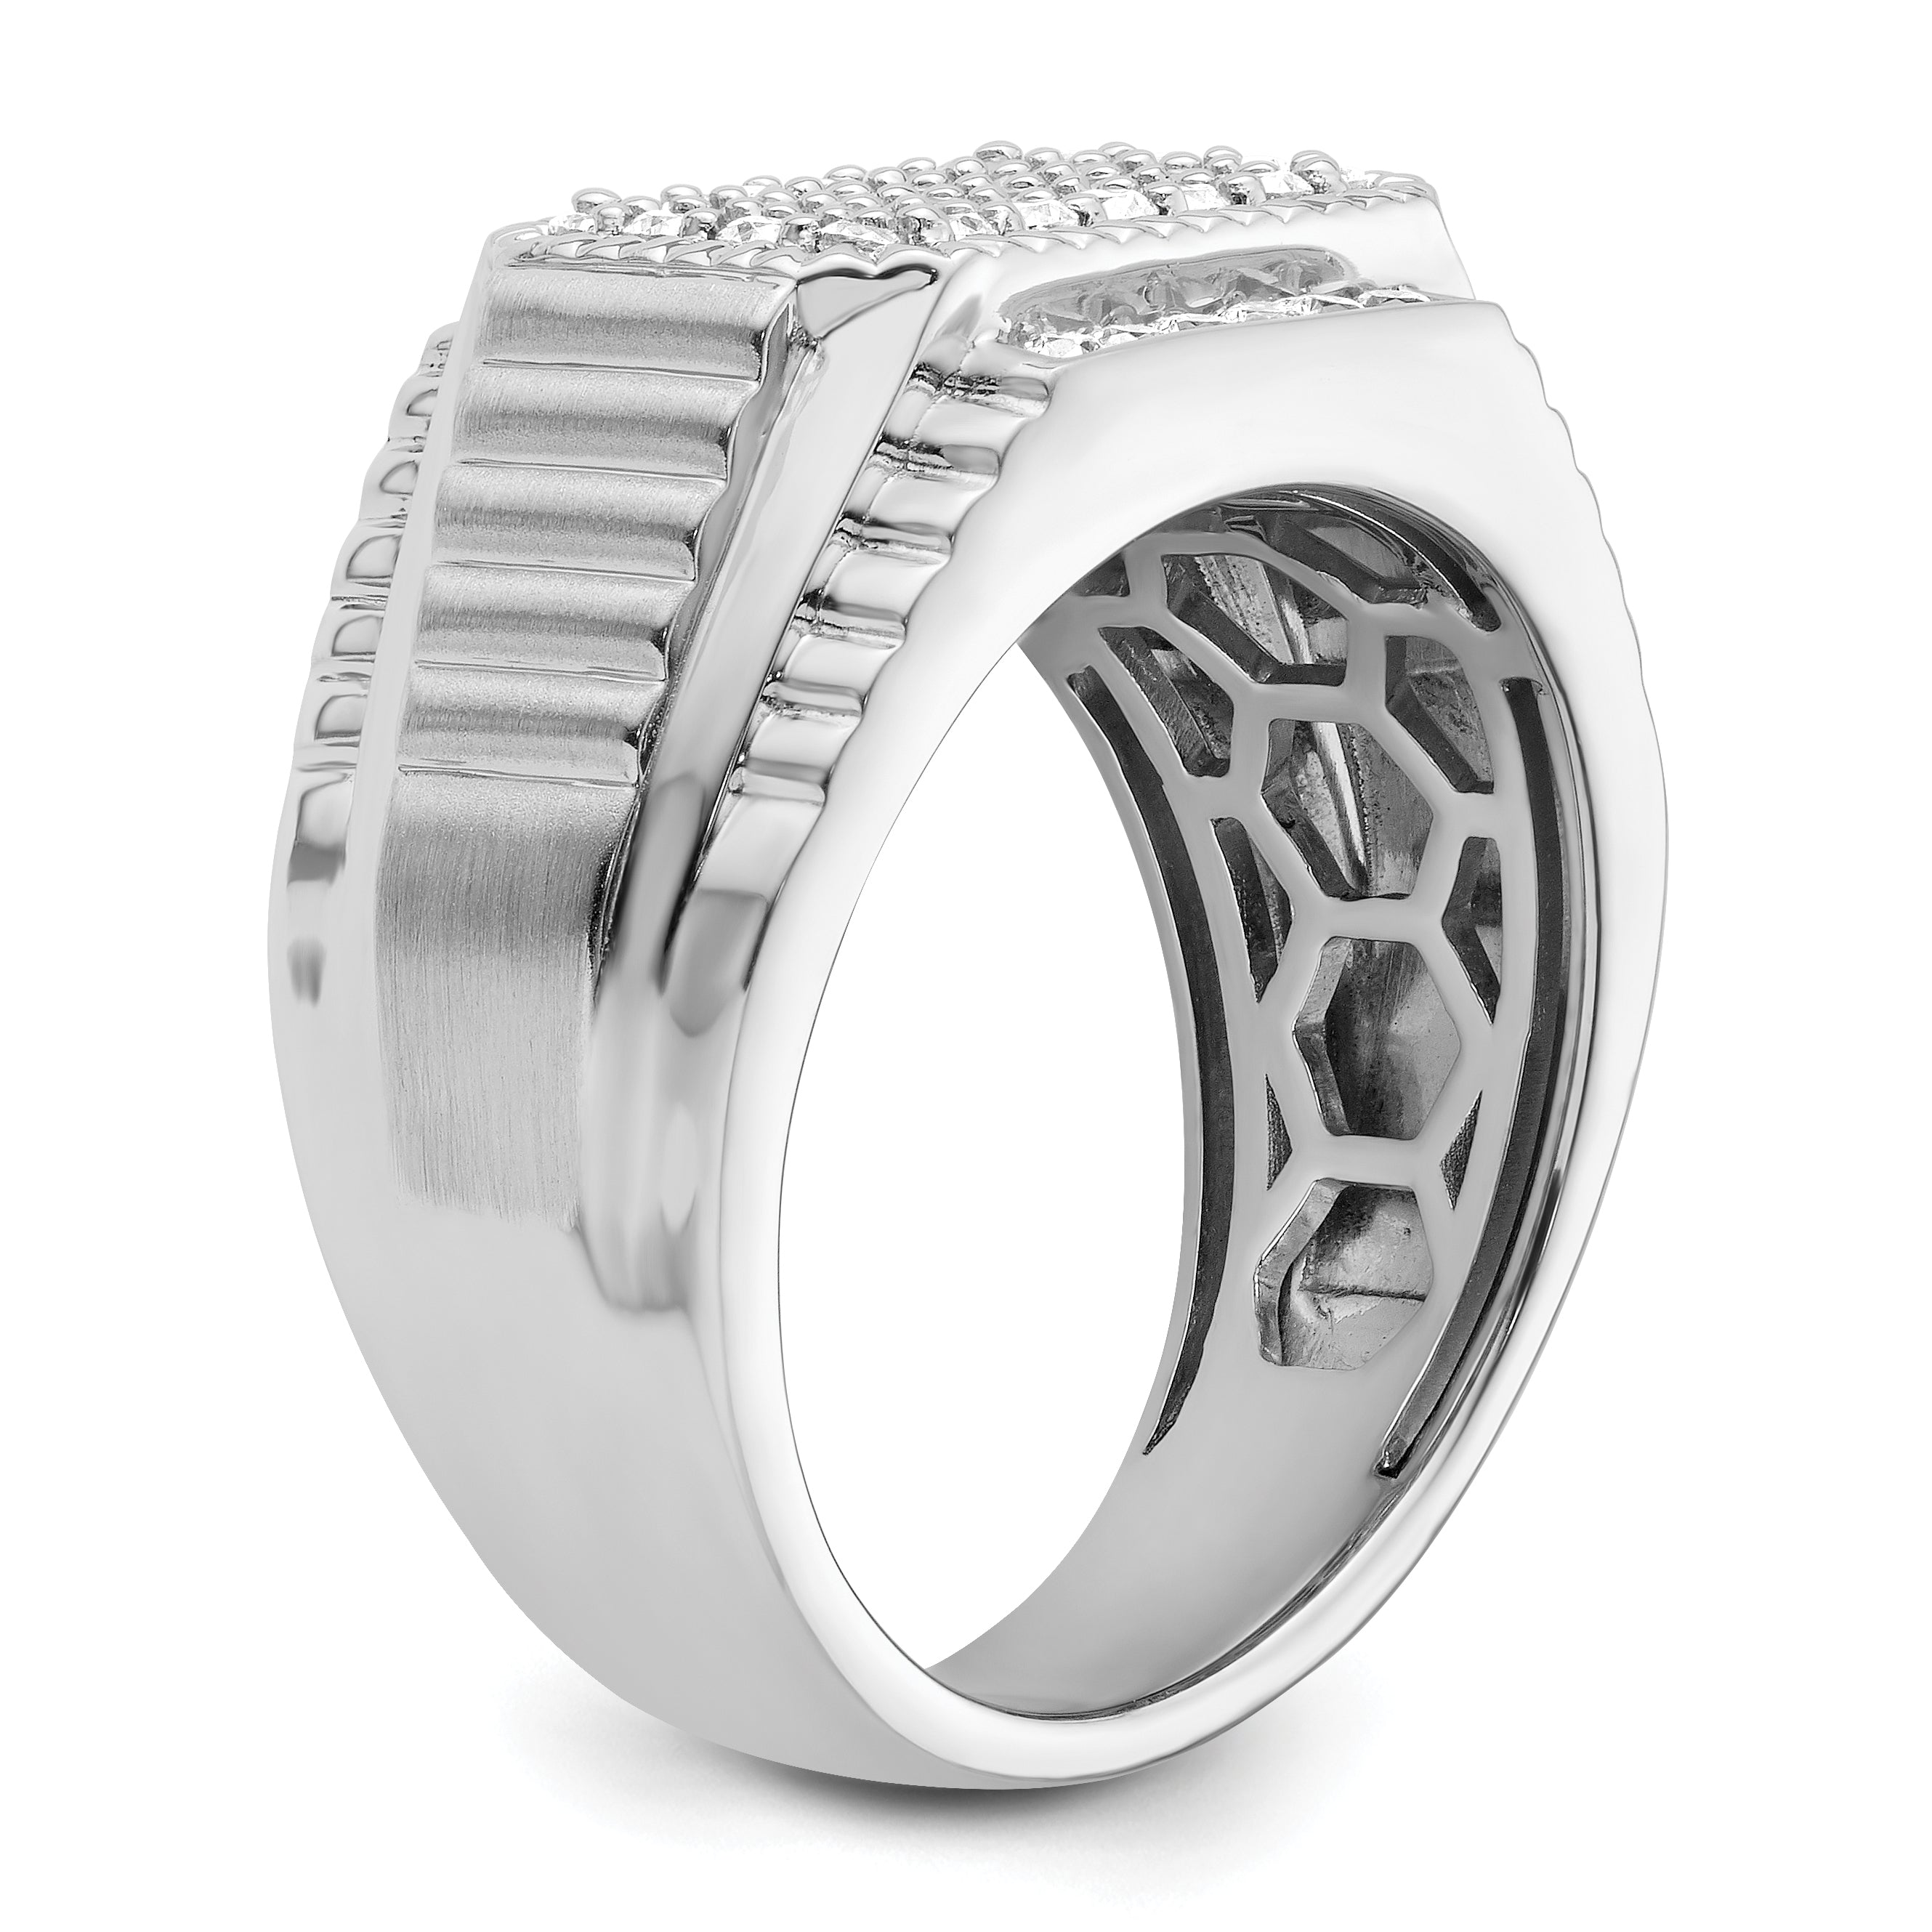 14K White Lab Grown Diamond Men's Ring